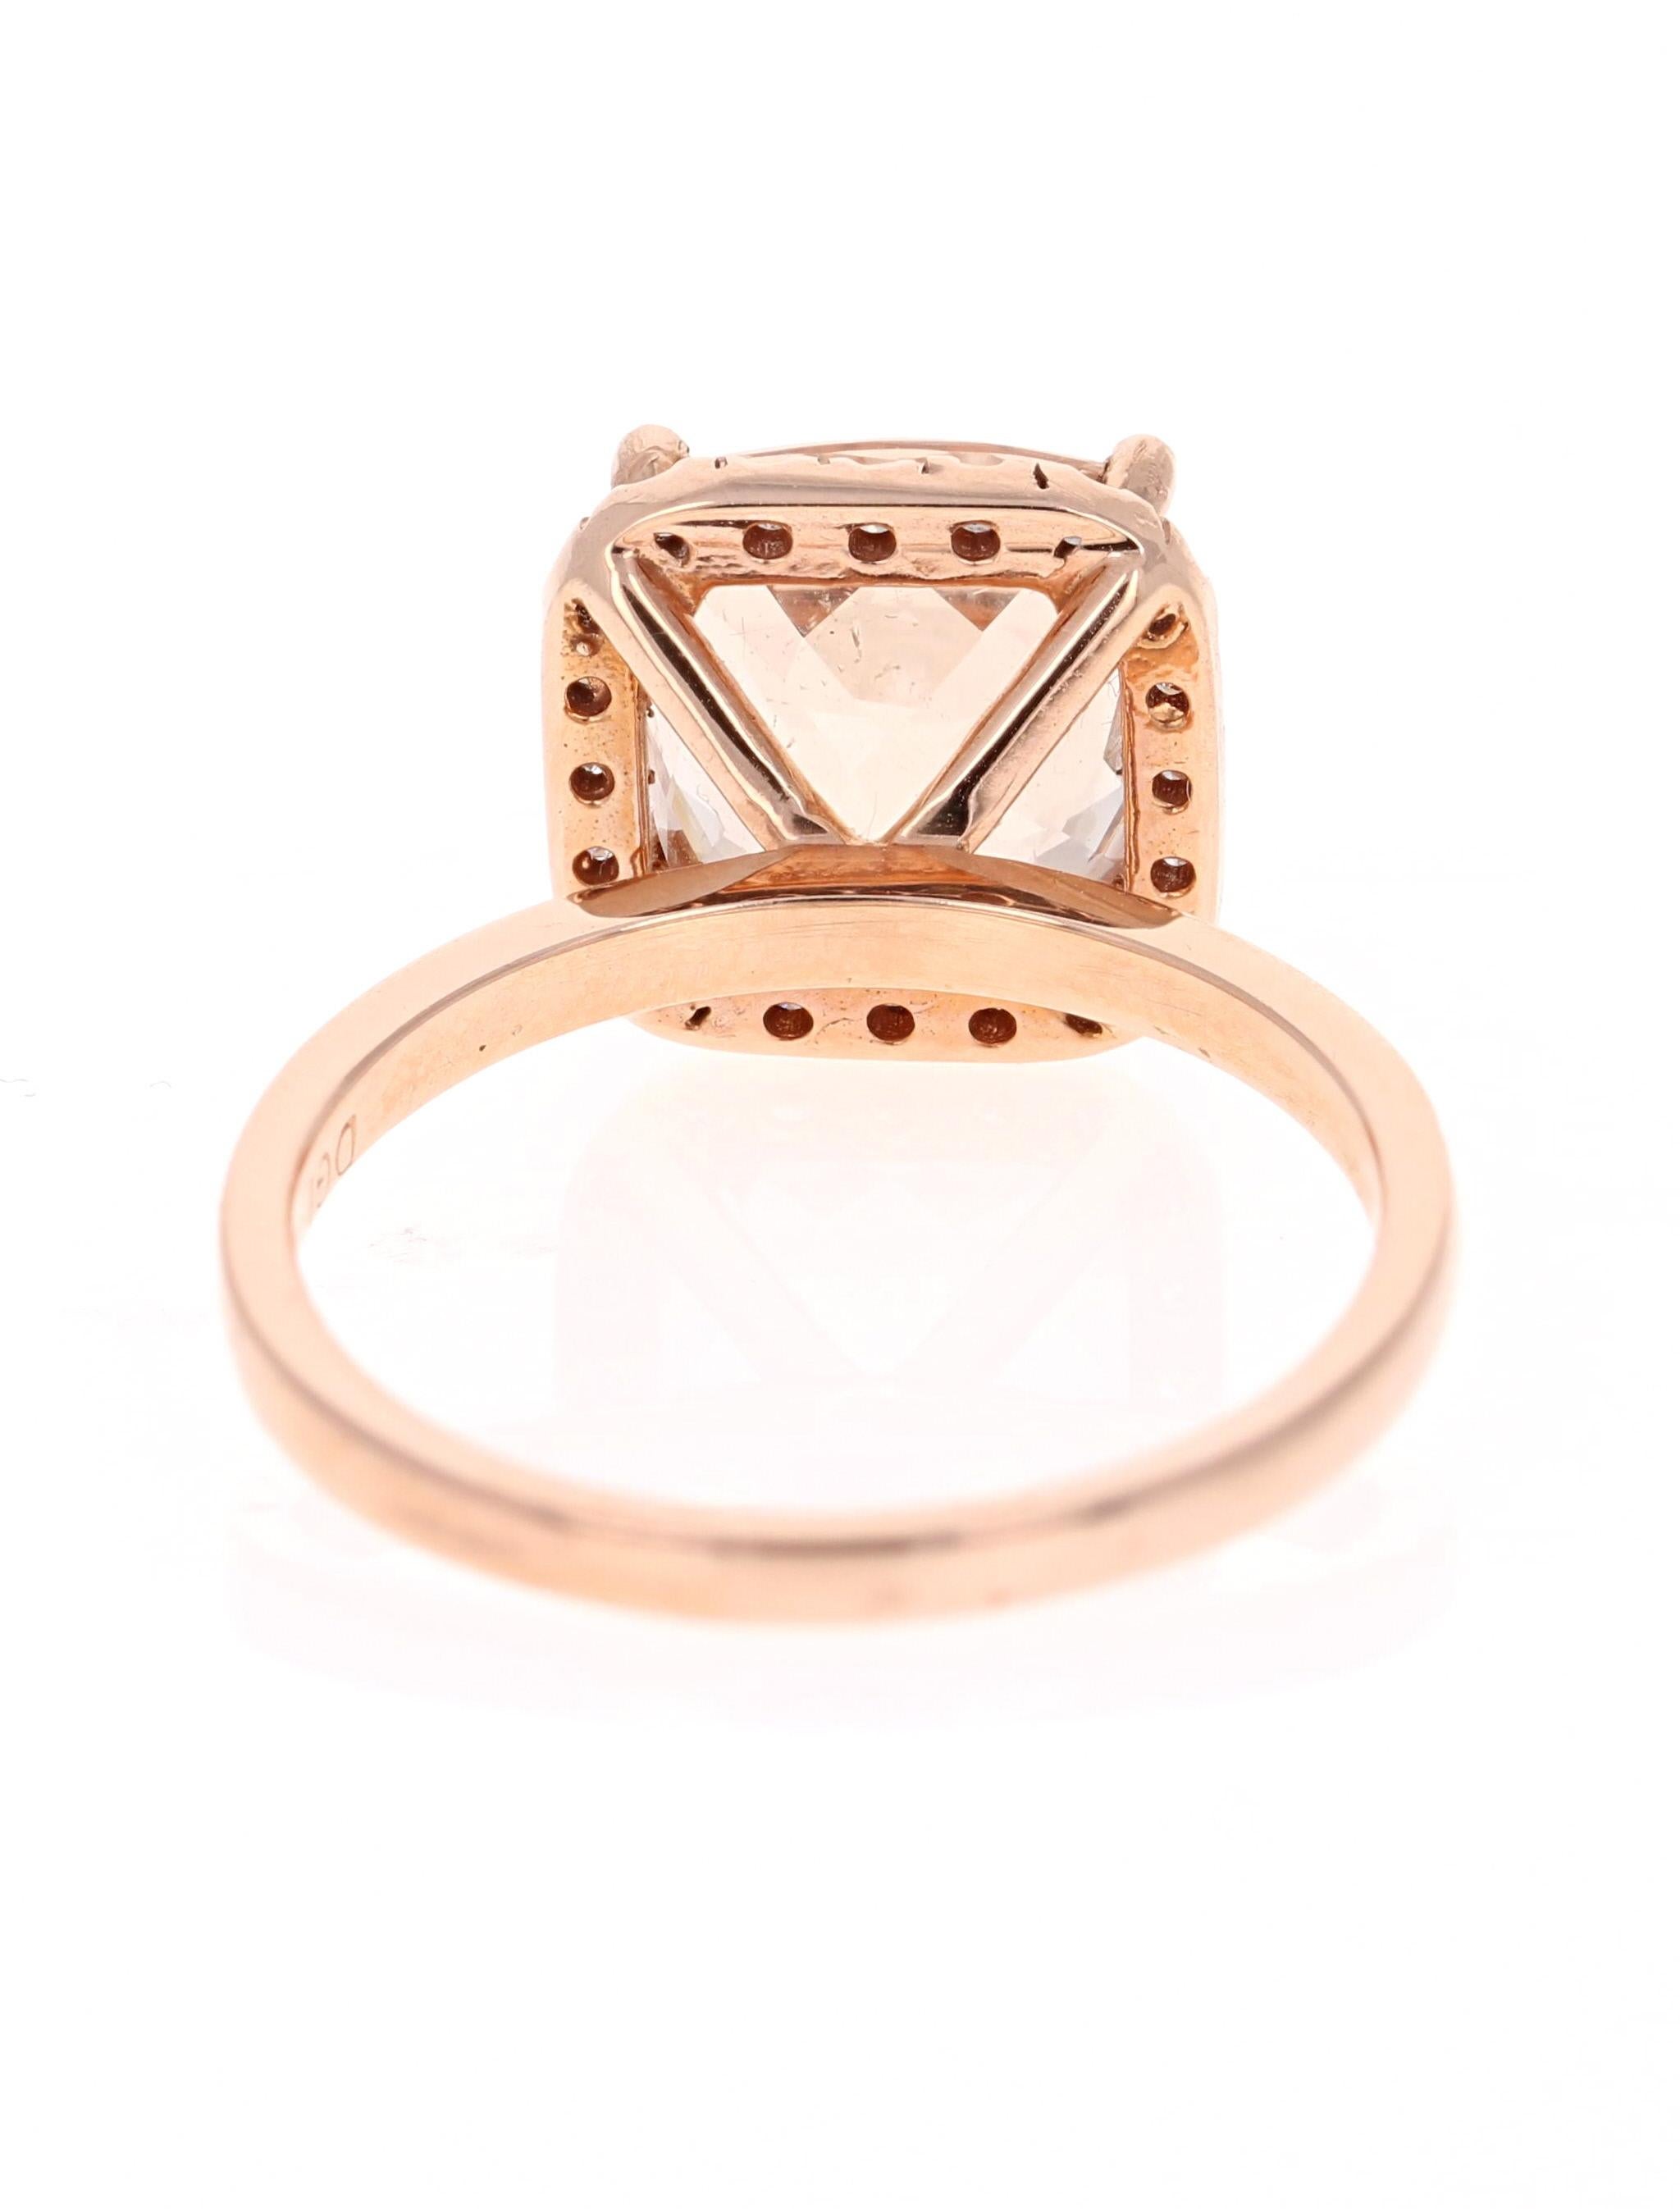 Modern 4.09 Carat Morganite Diamond 14 Karat Rose Gold Engagement Ring